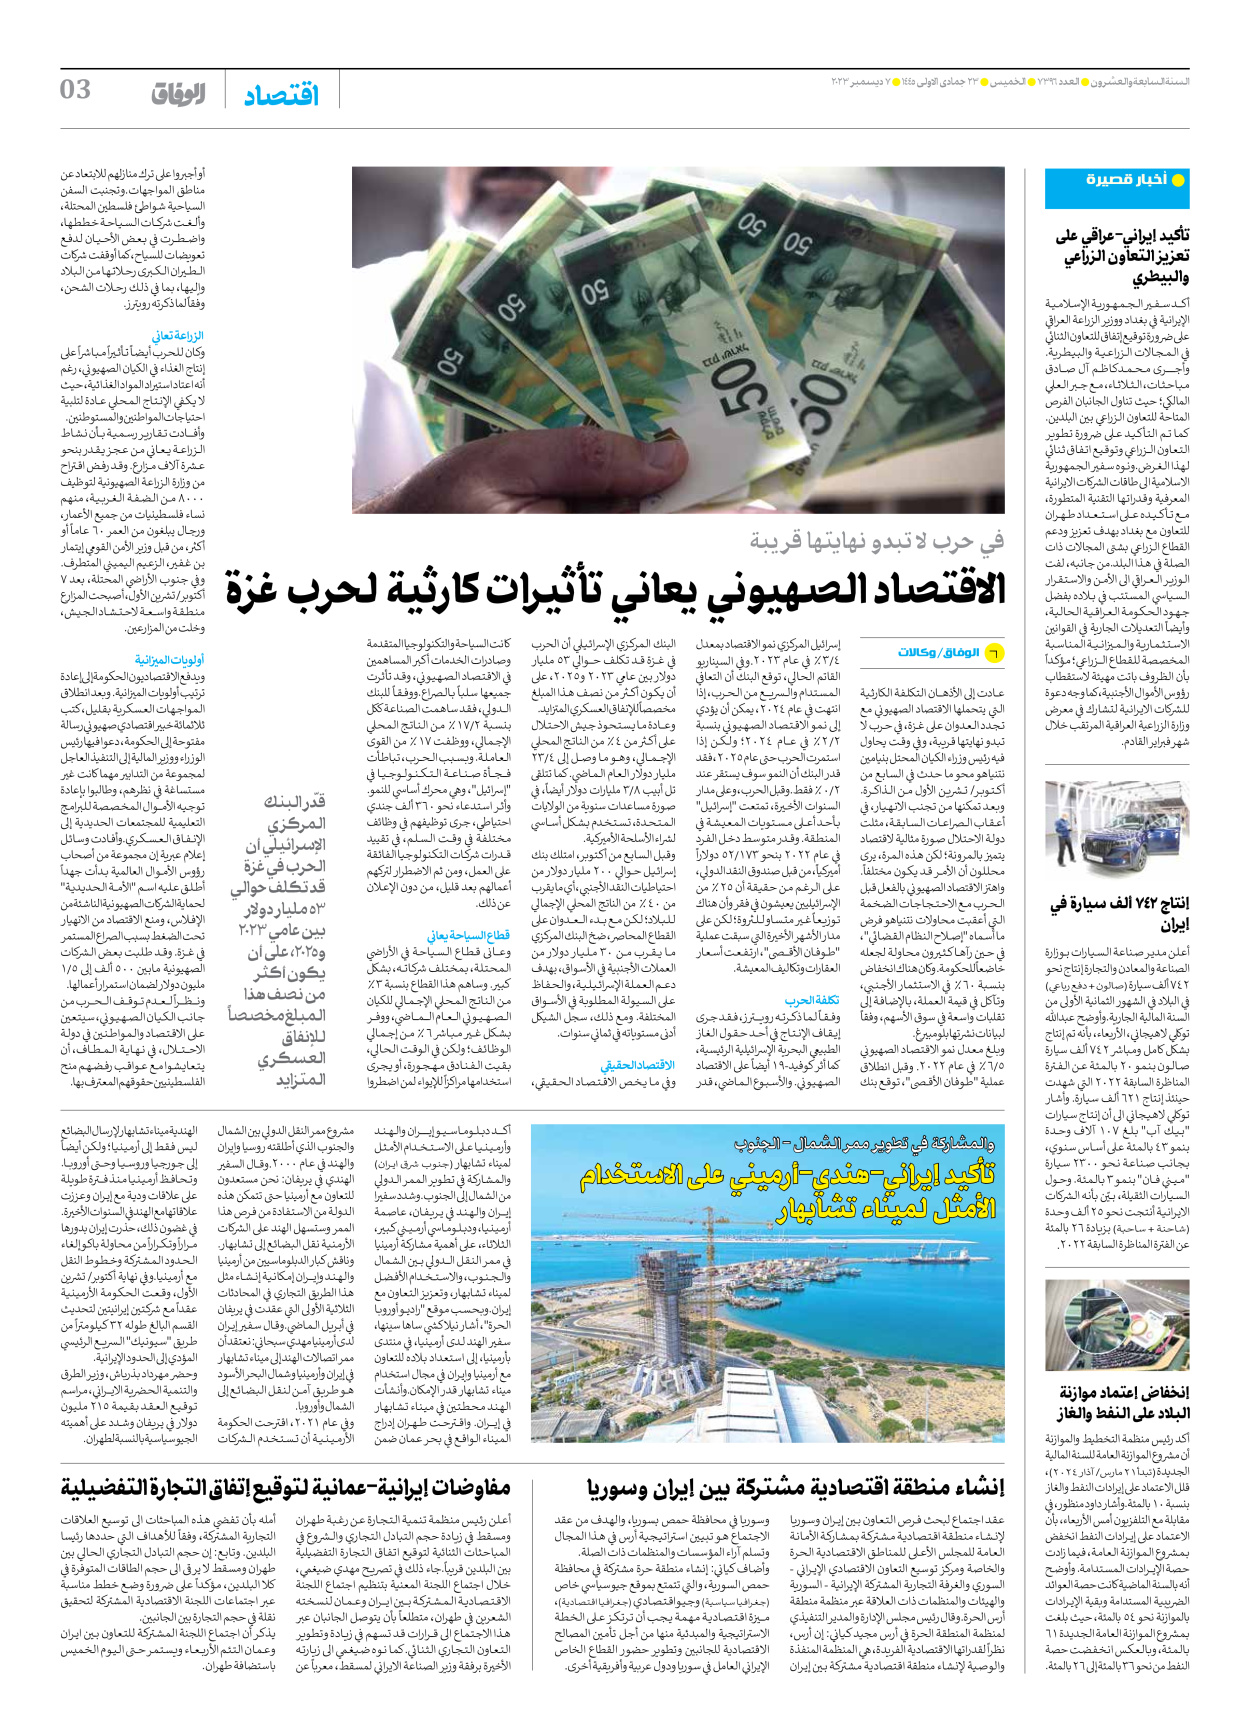 صحیفة ایران الدولیة الوفاق - العدد سبعة آلاف وثلاثمائة وستة وتسعون - ٠٧ ديسمبر ٢٠٢٣ - الصفحة ۳